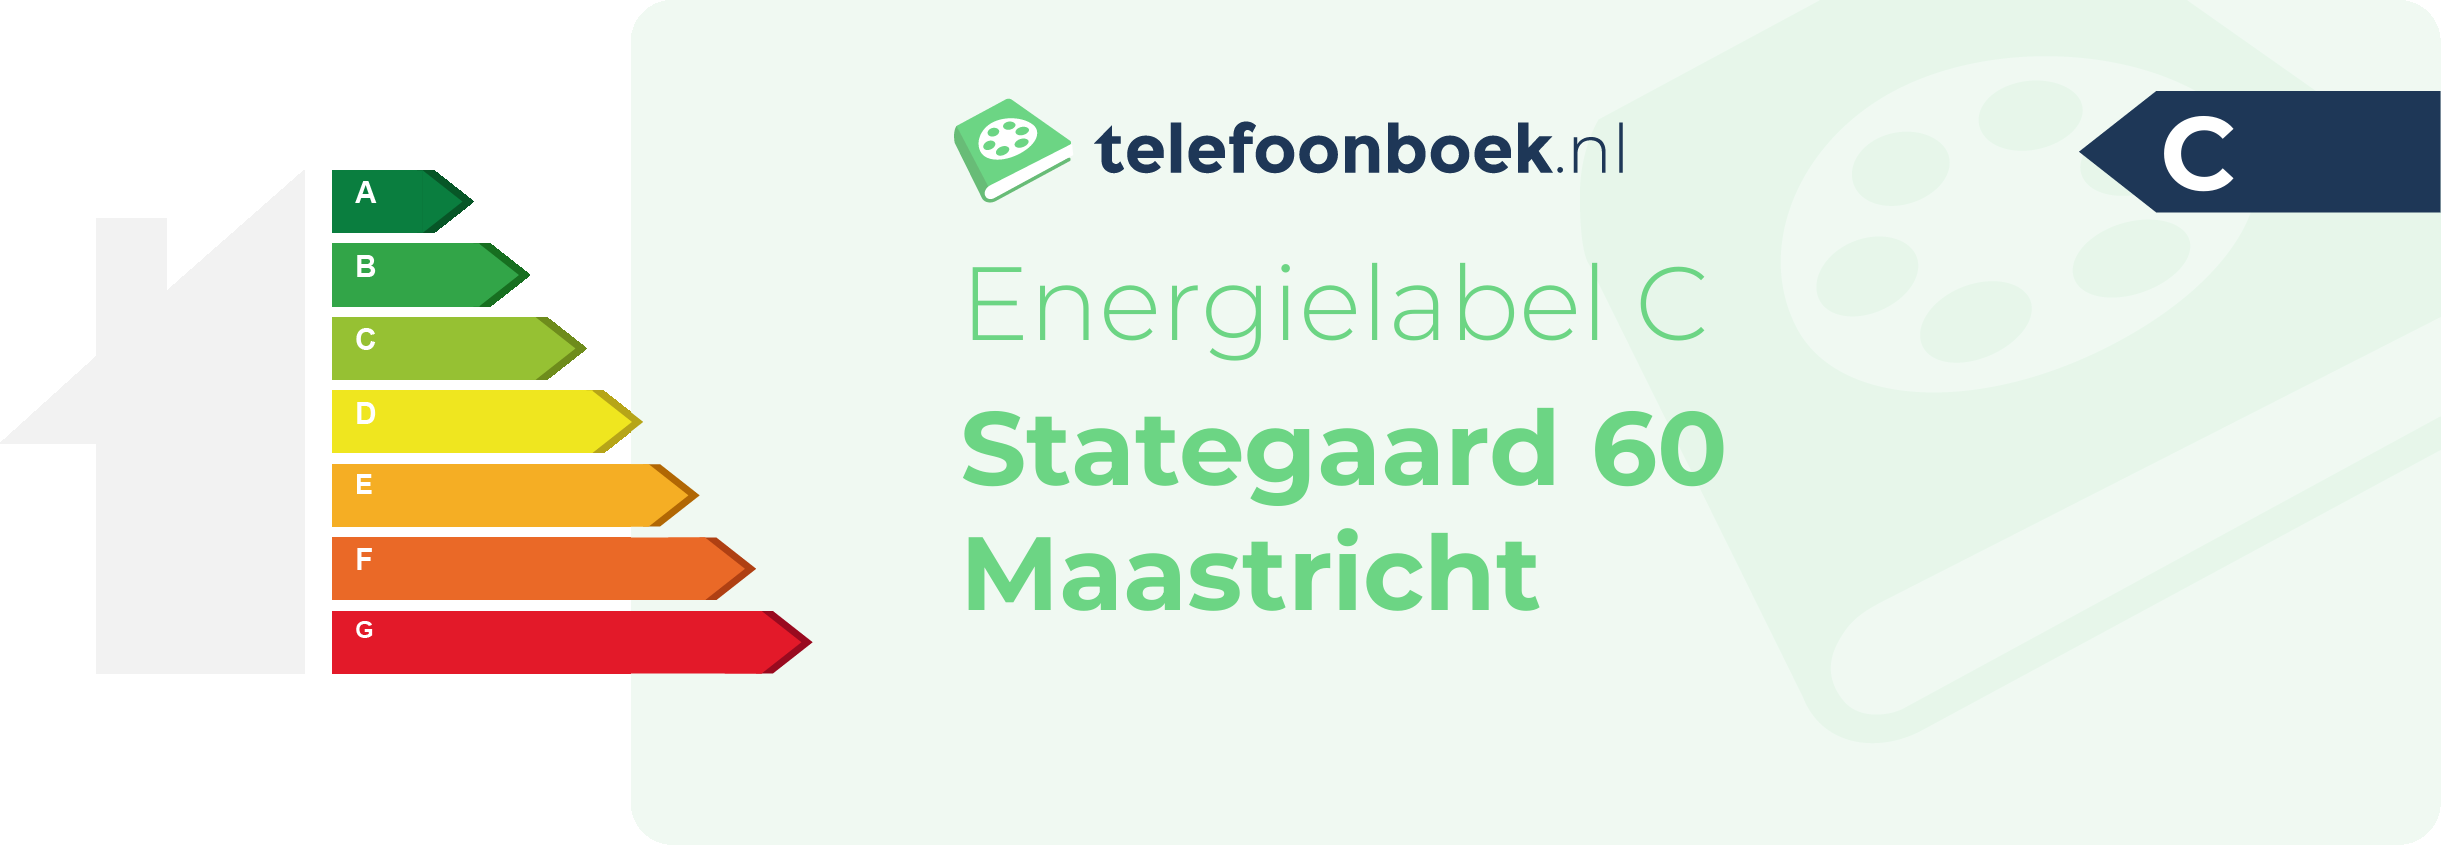 Energielabel Stategaard 60 Maastricht